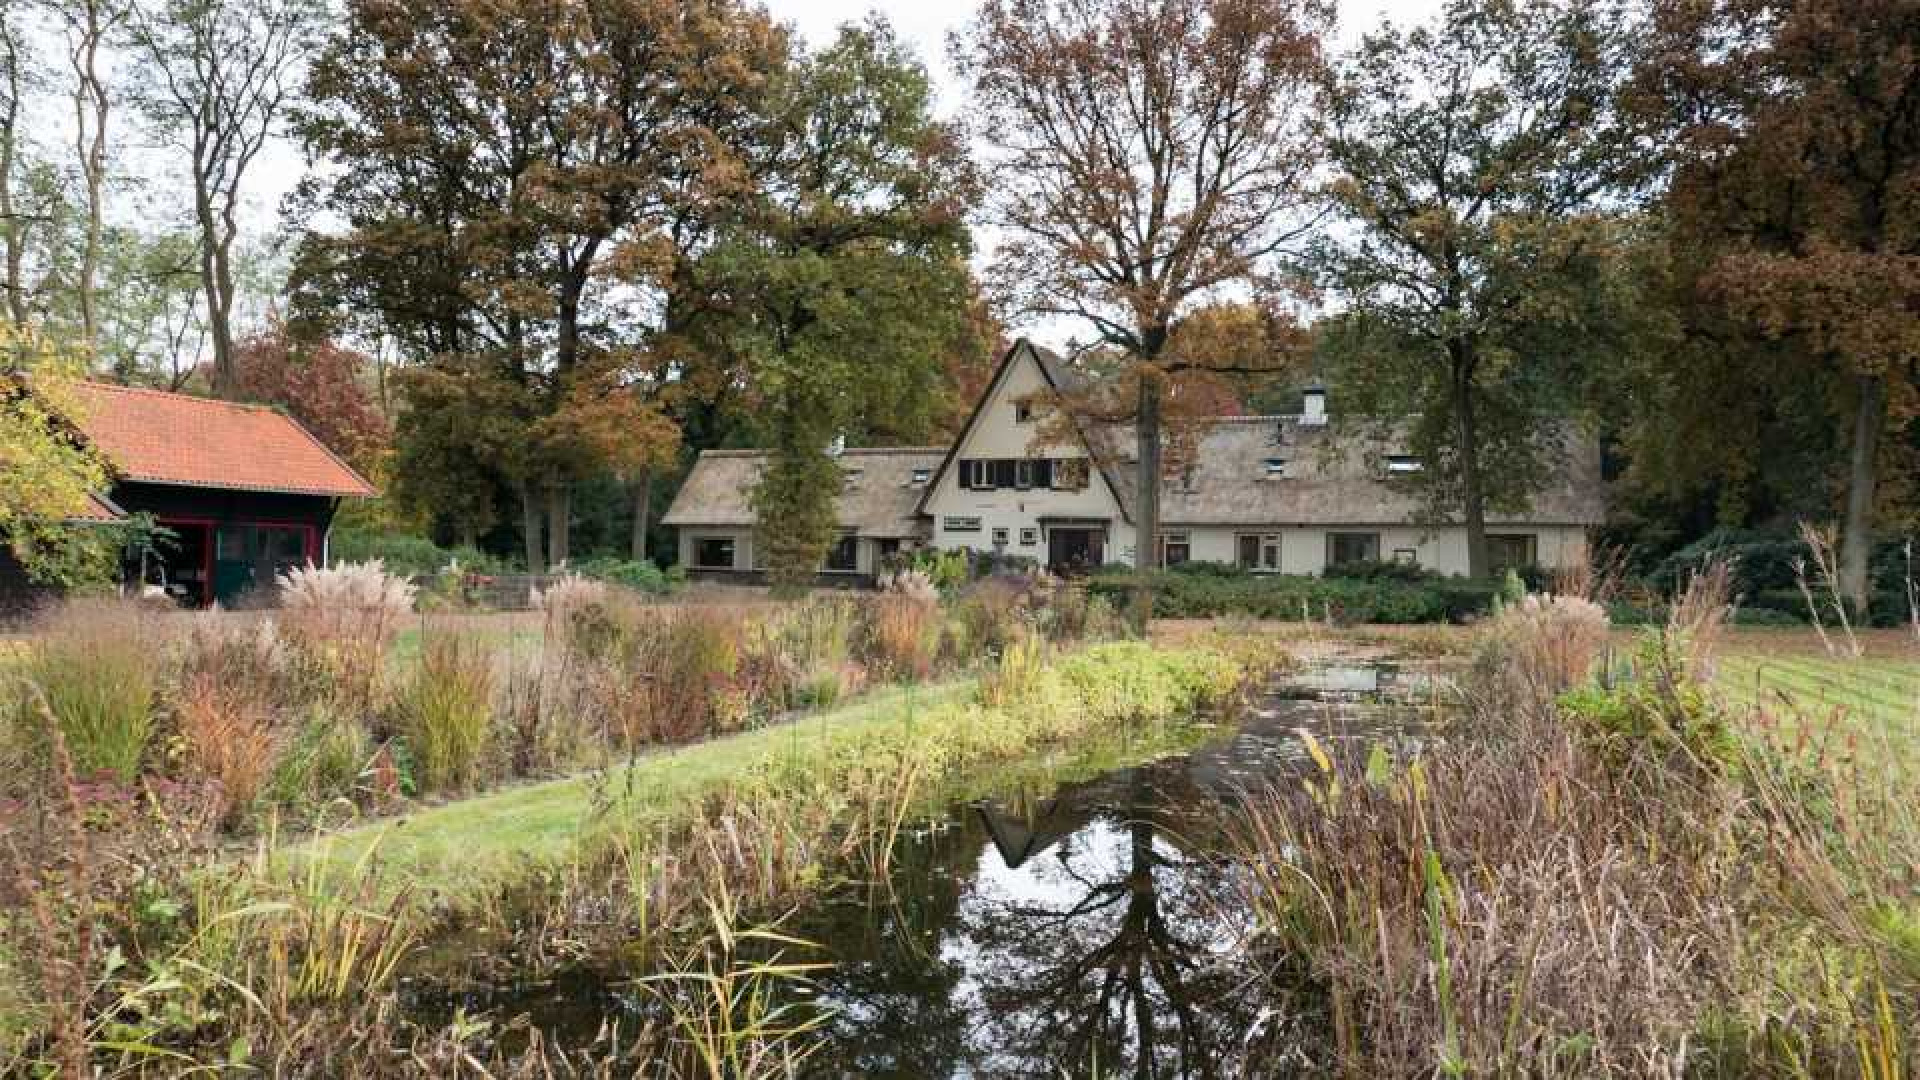 Oud PvdA topman Marcel van Dam haalt zijn landhuis uit de verkoop. Zie foto's 20